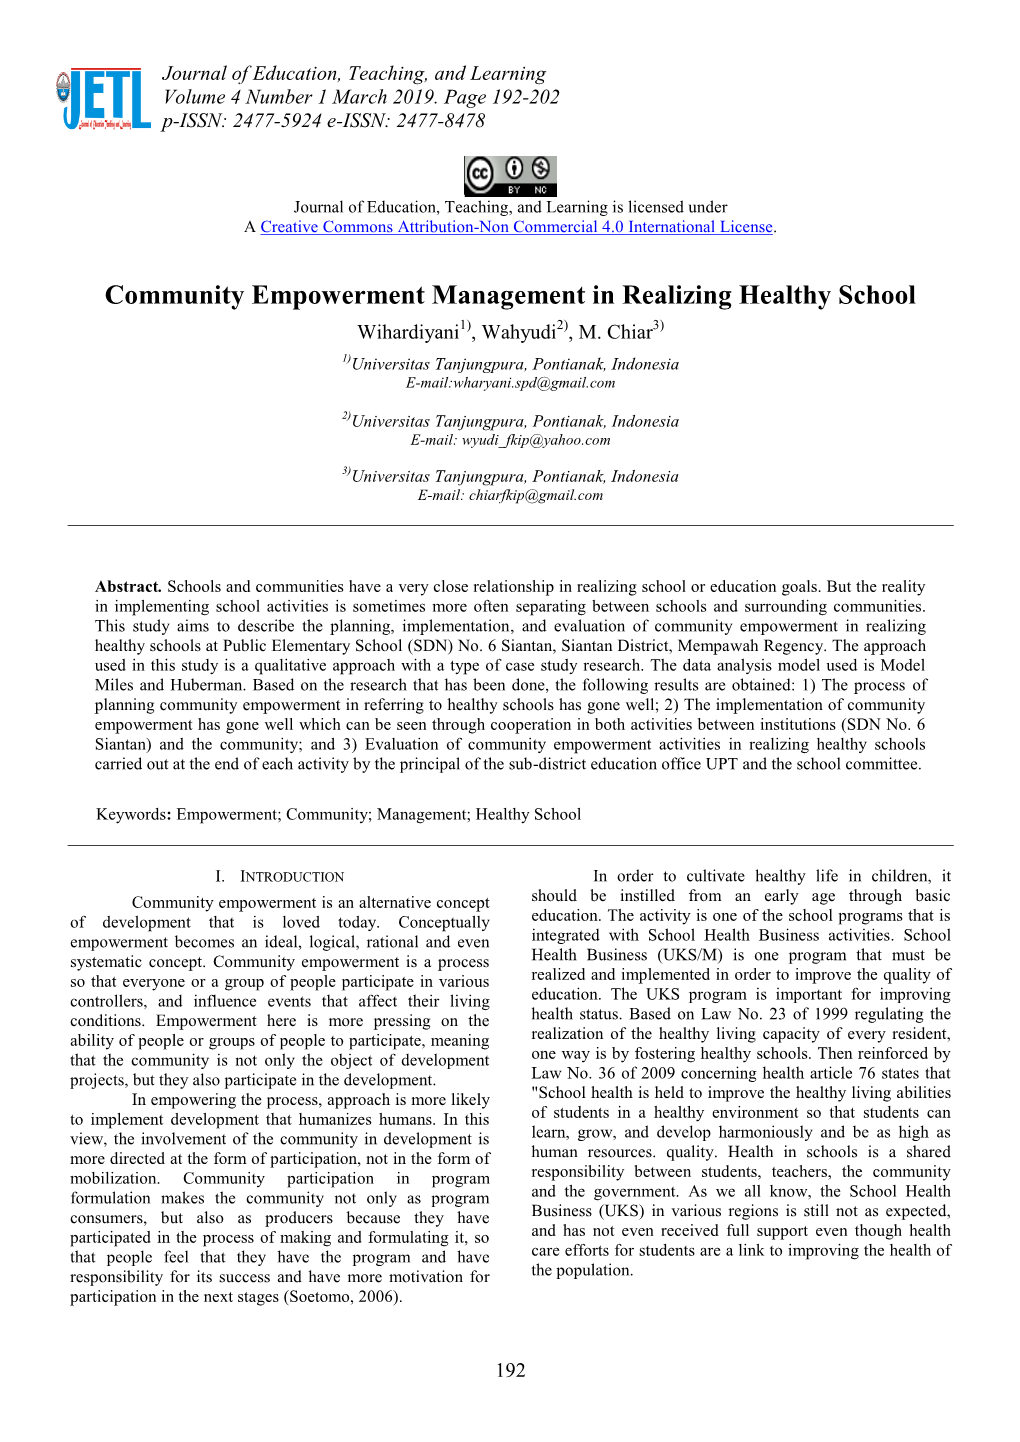 Community Empowerment Management in Realizing Healthy School Wihardiyani1), Wahyudi2), M